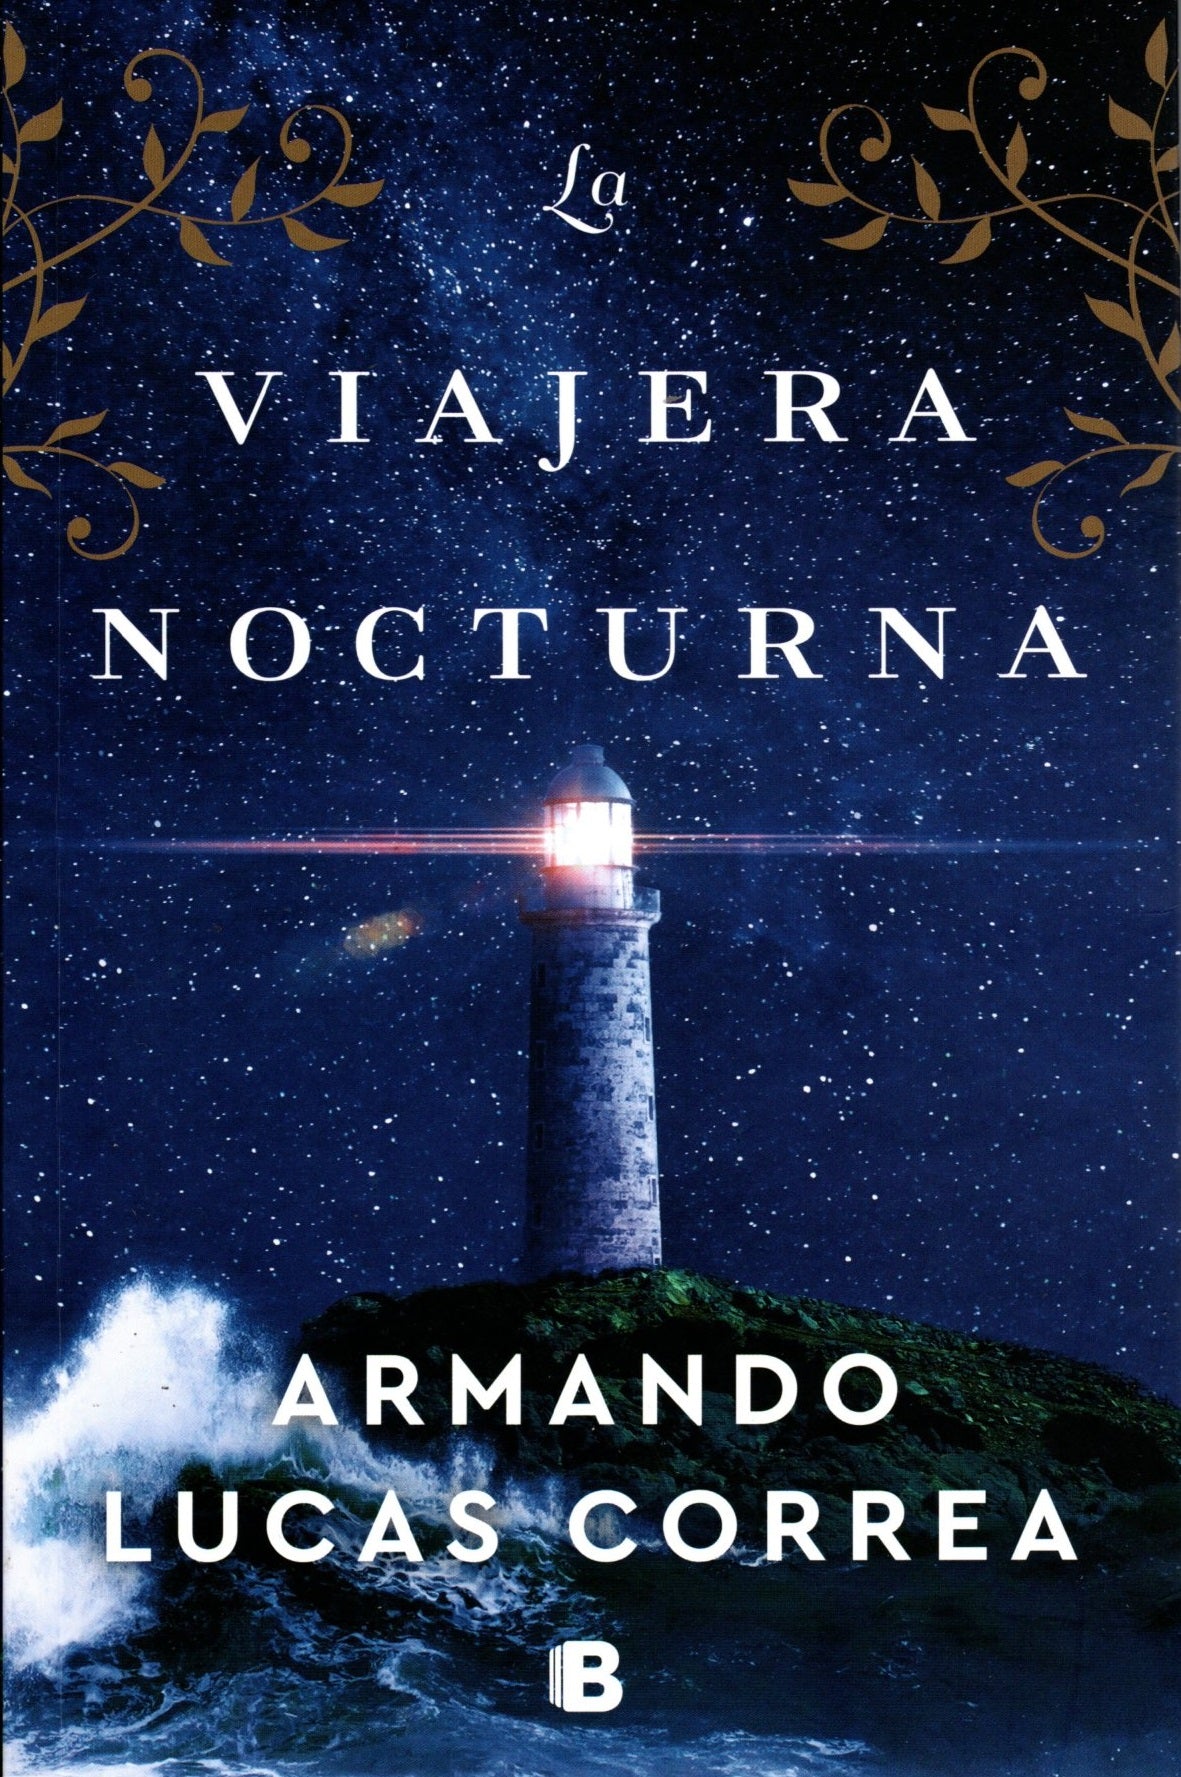 Libro Armando Lucas Correa - La viajera nocturna